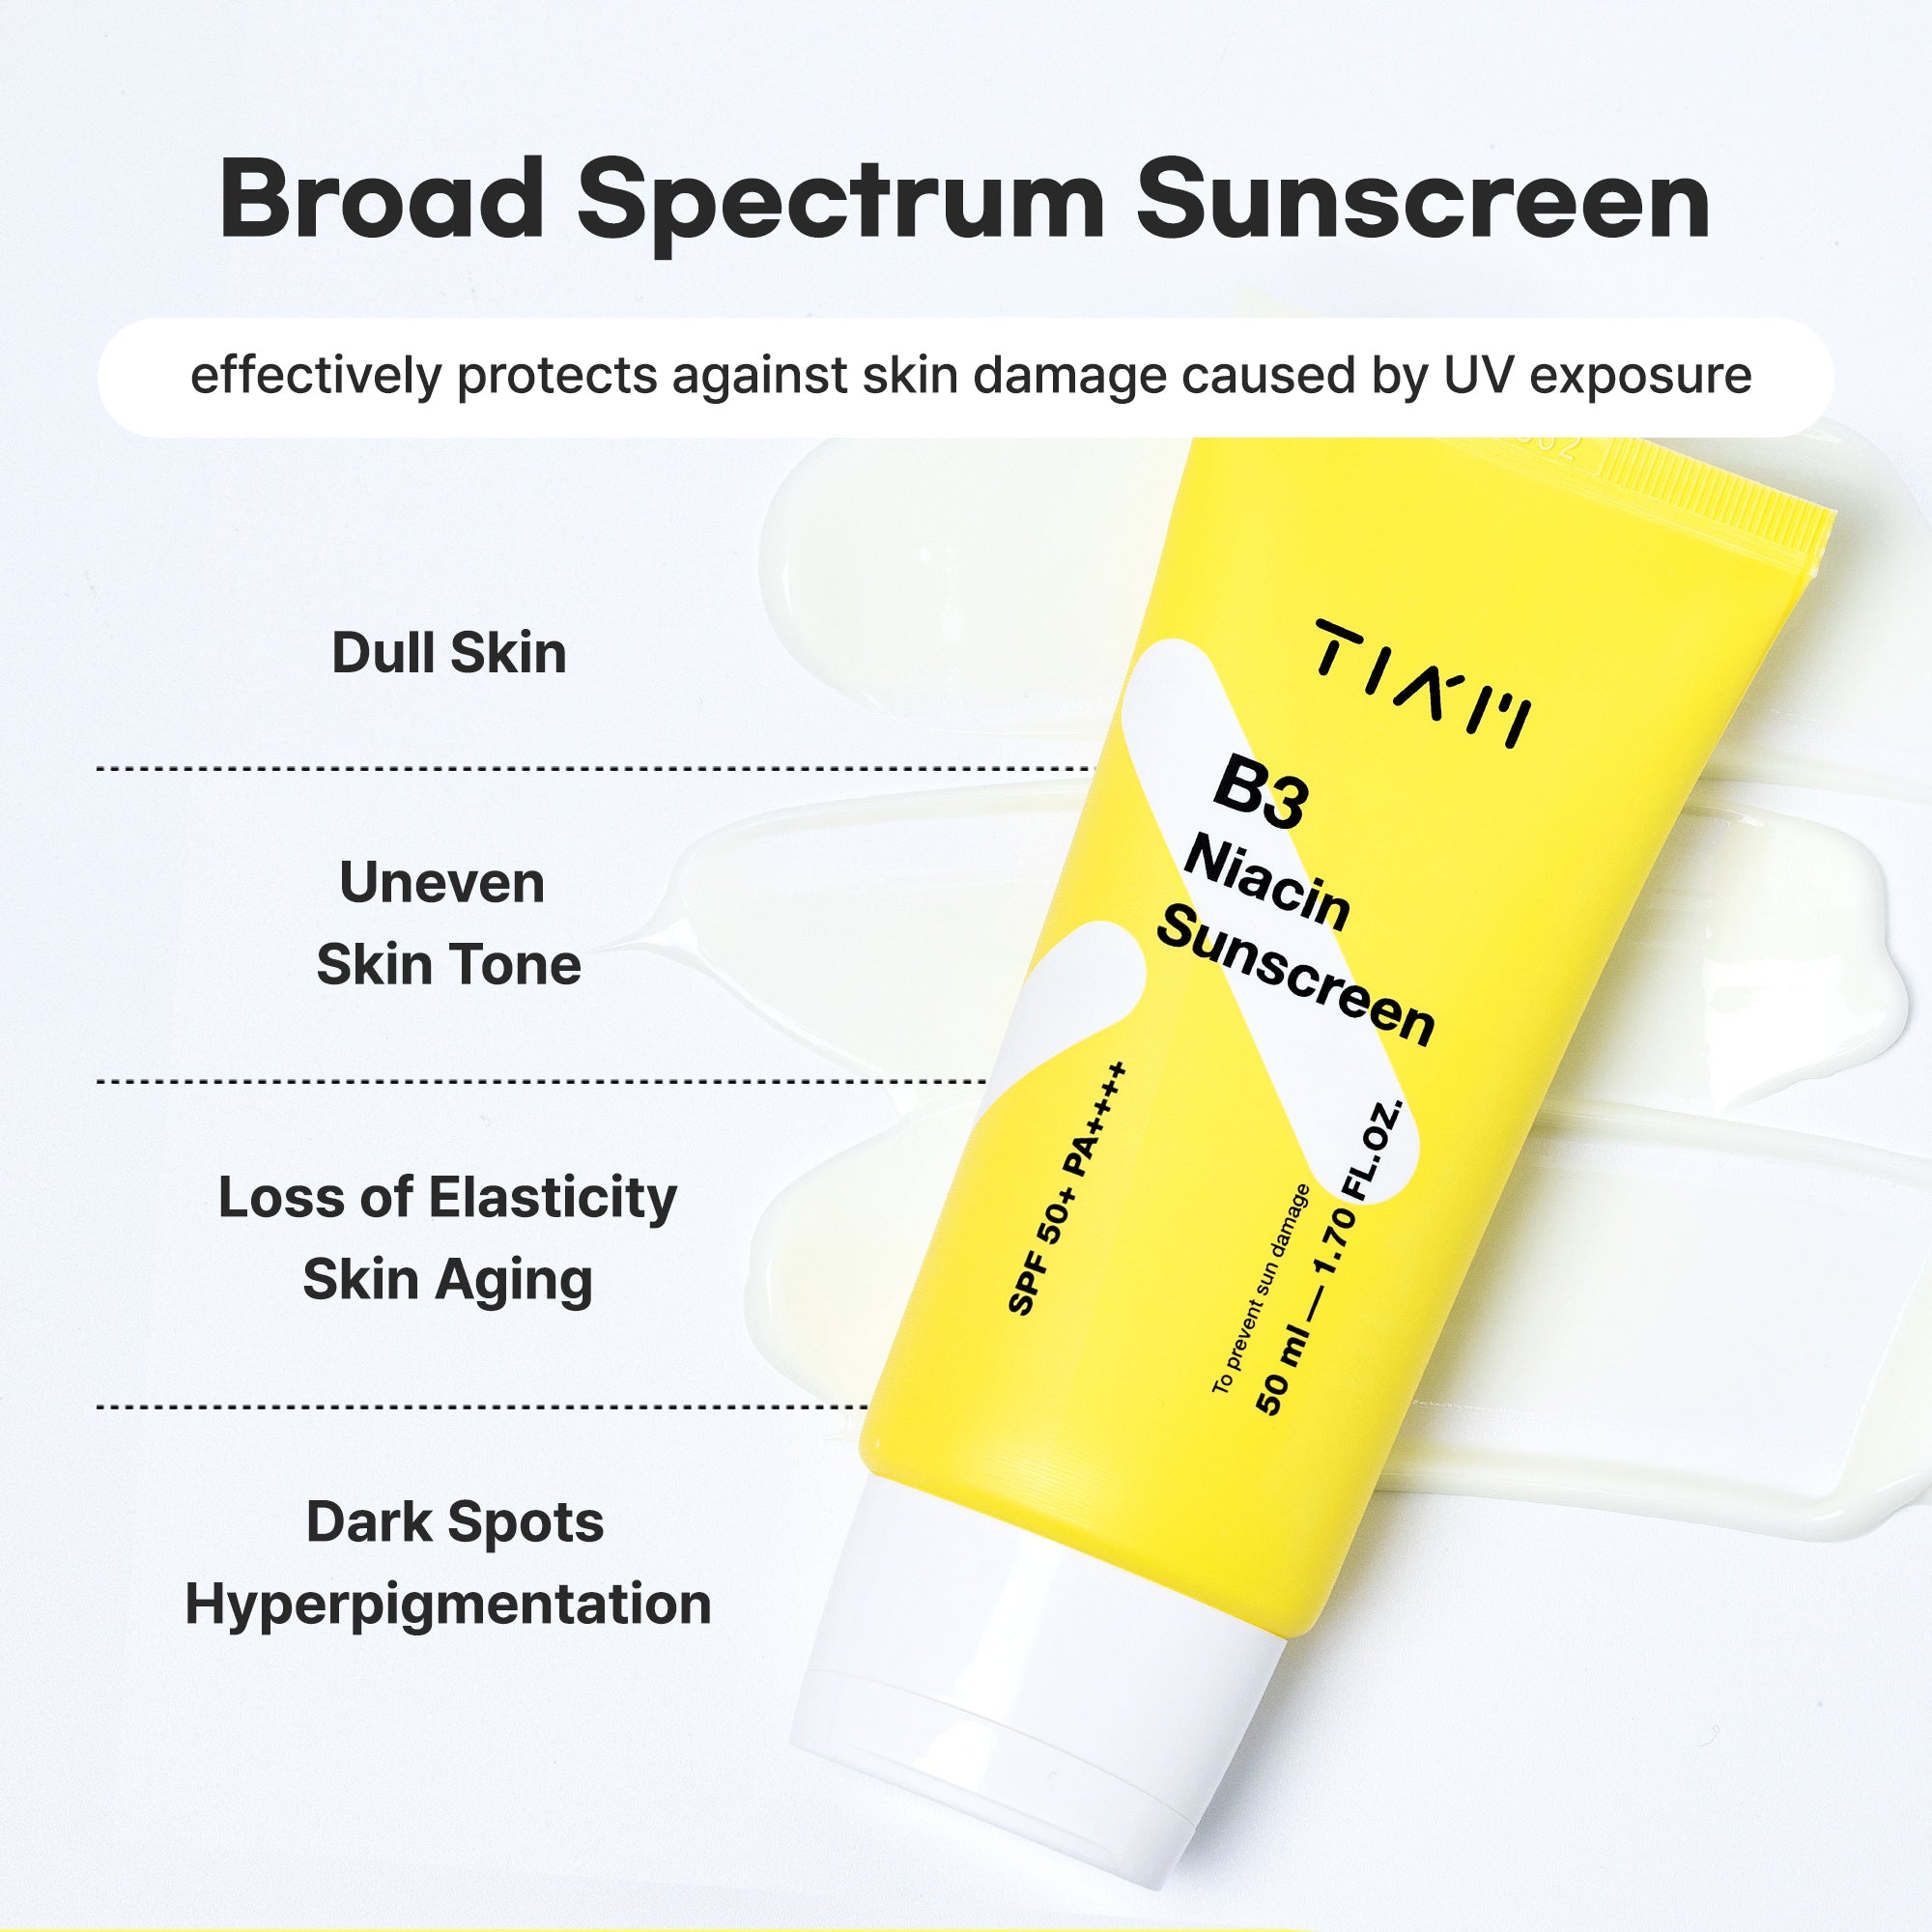 B3 Niacin Sunscreen